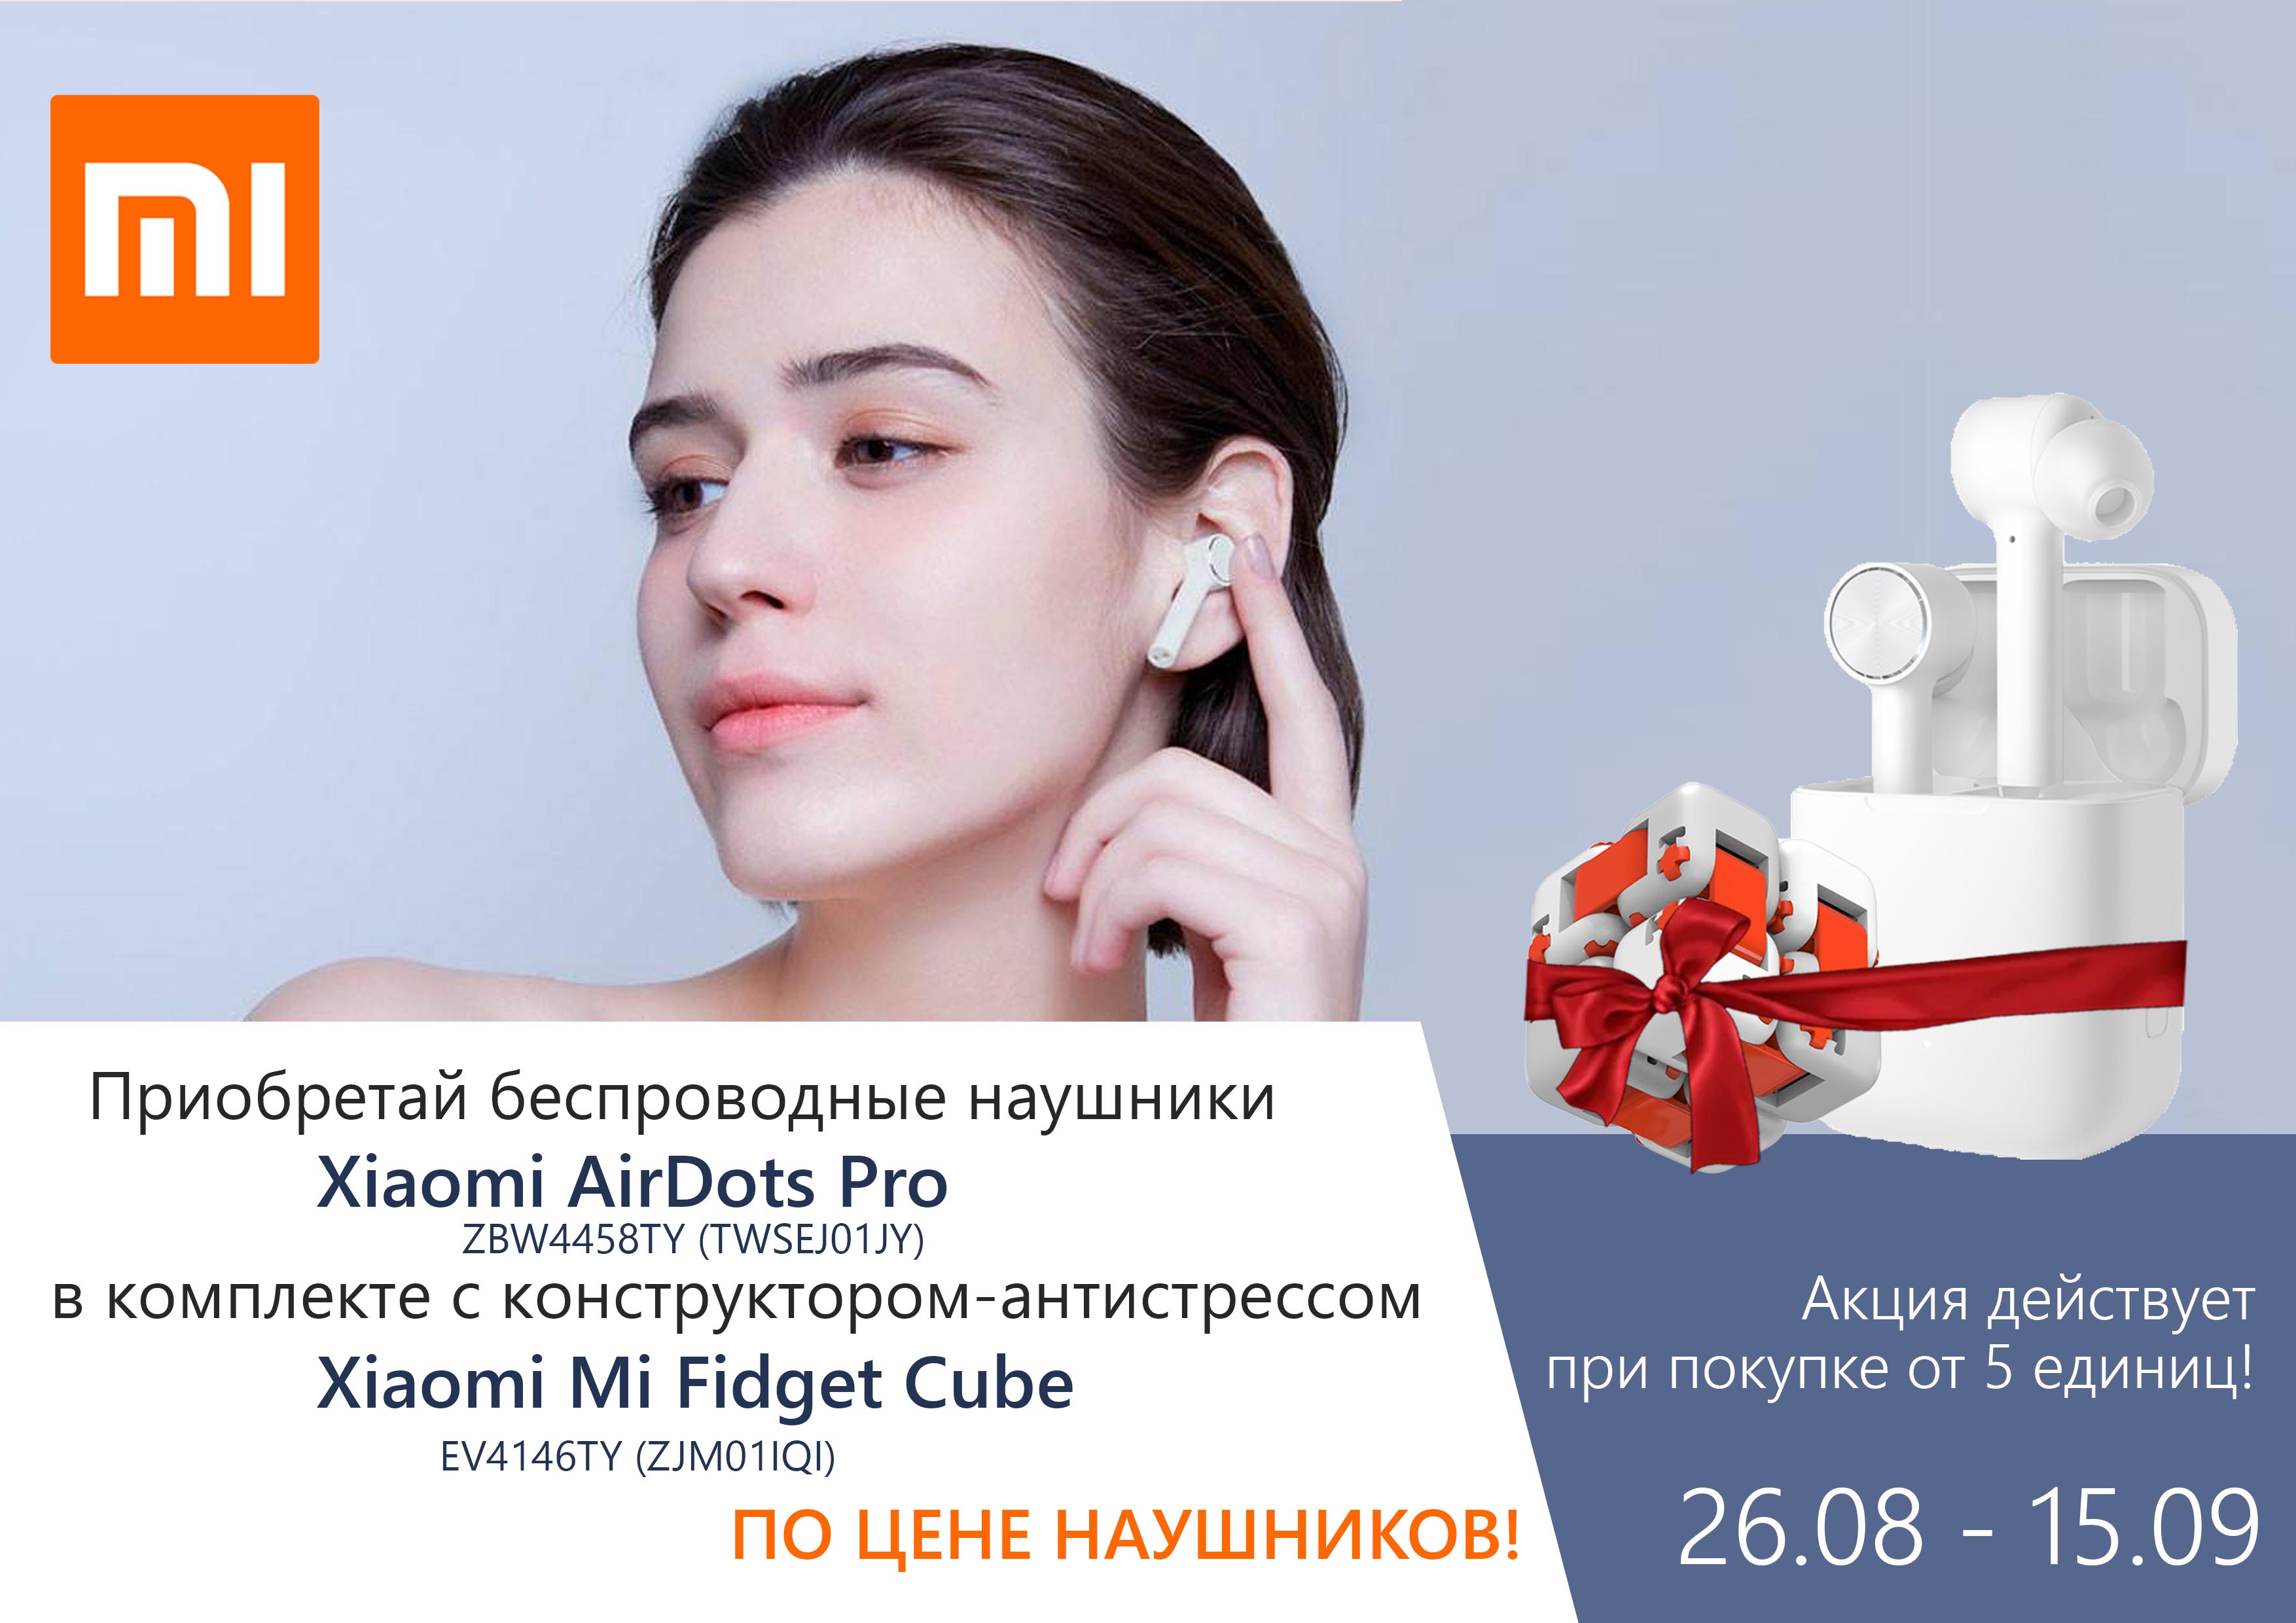 Приобретай беспроводные наушники Xiaomi AirDots Pro  в комплекте с Xiaomi Mi Fidget Cube по цене наушников!